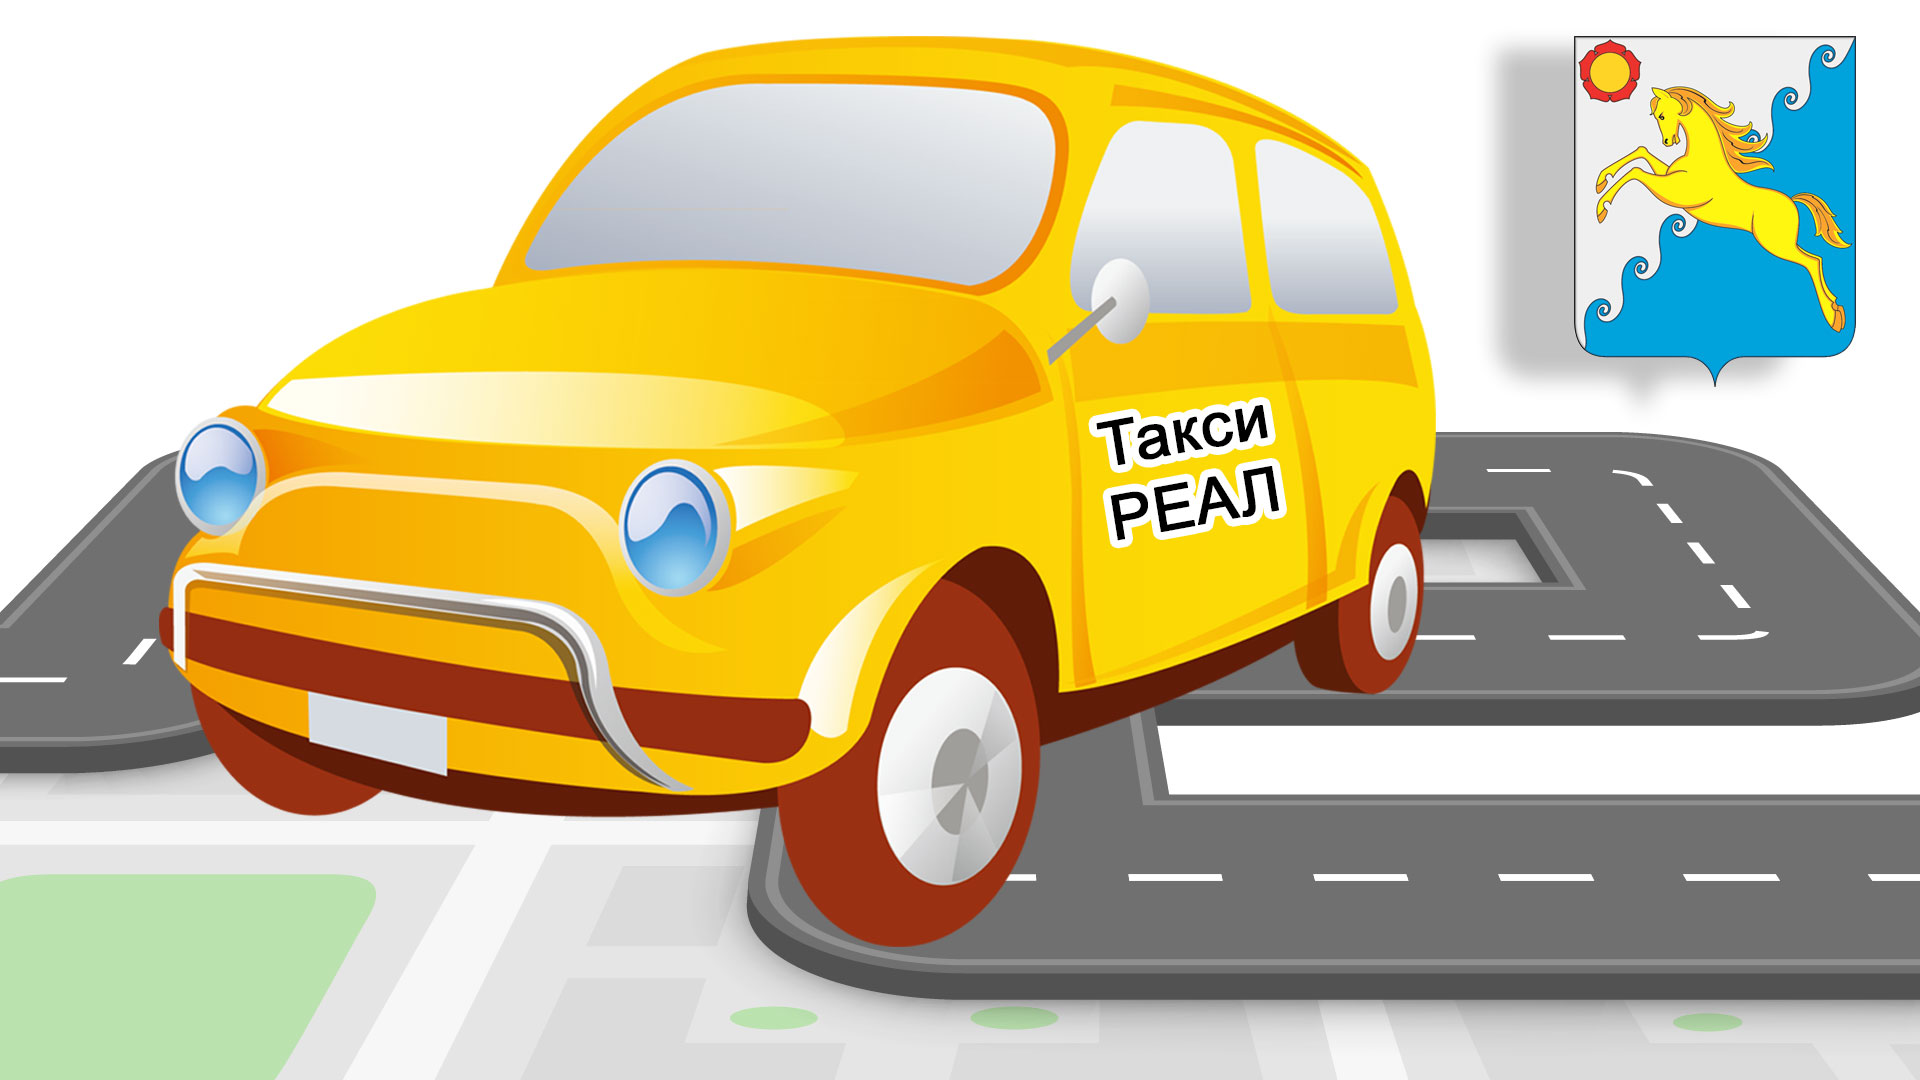 Машина с надписью "Такси Реал" и герб Усть-Абакан.